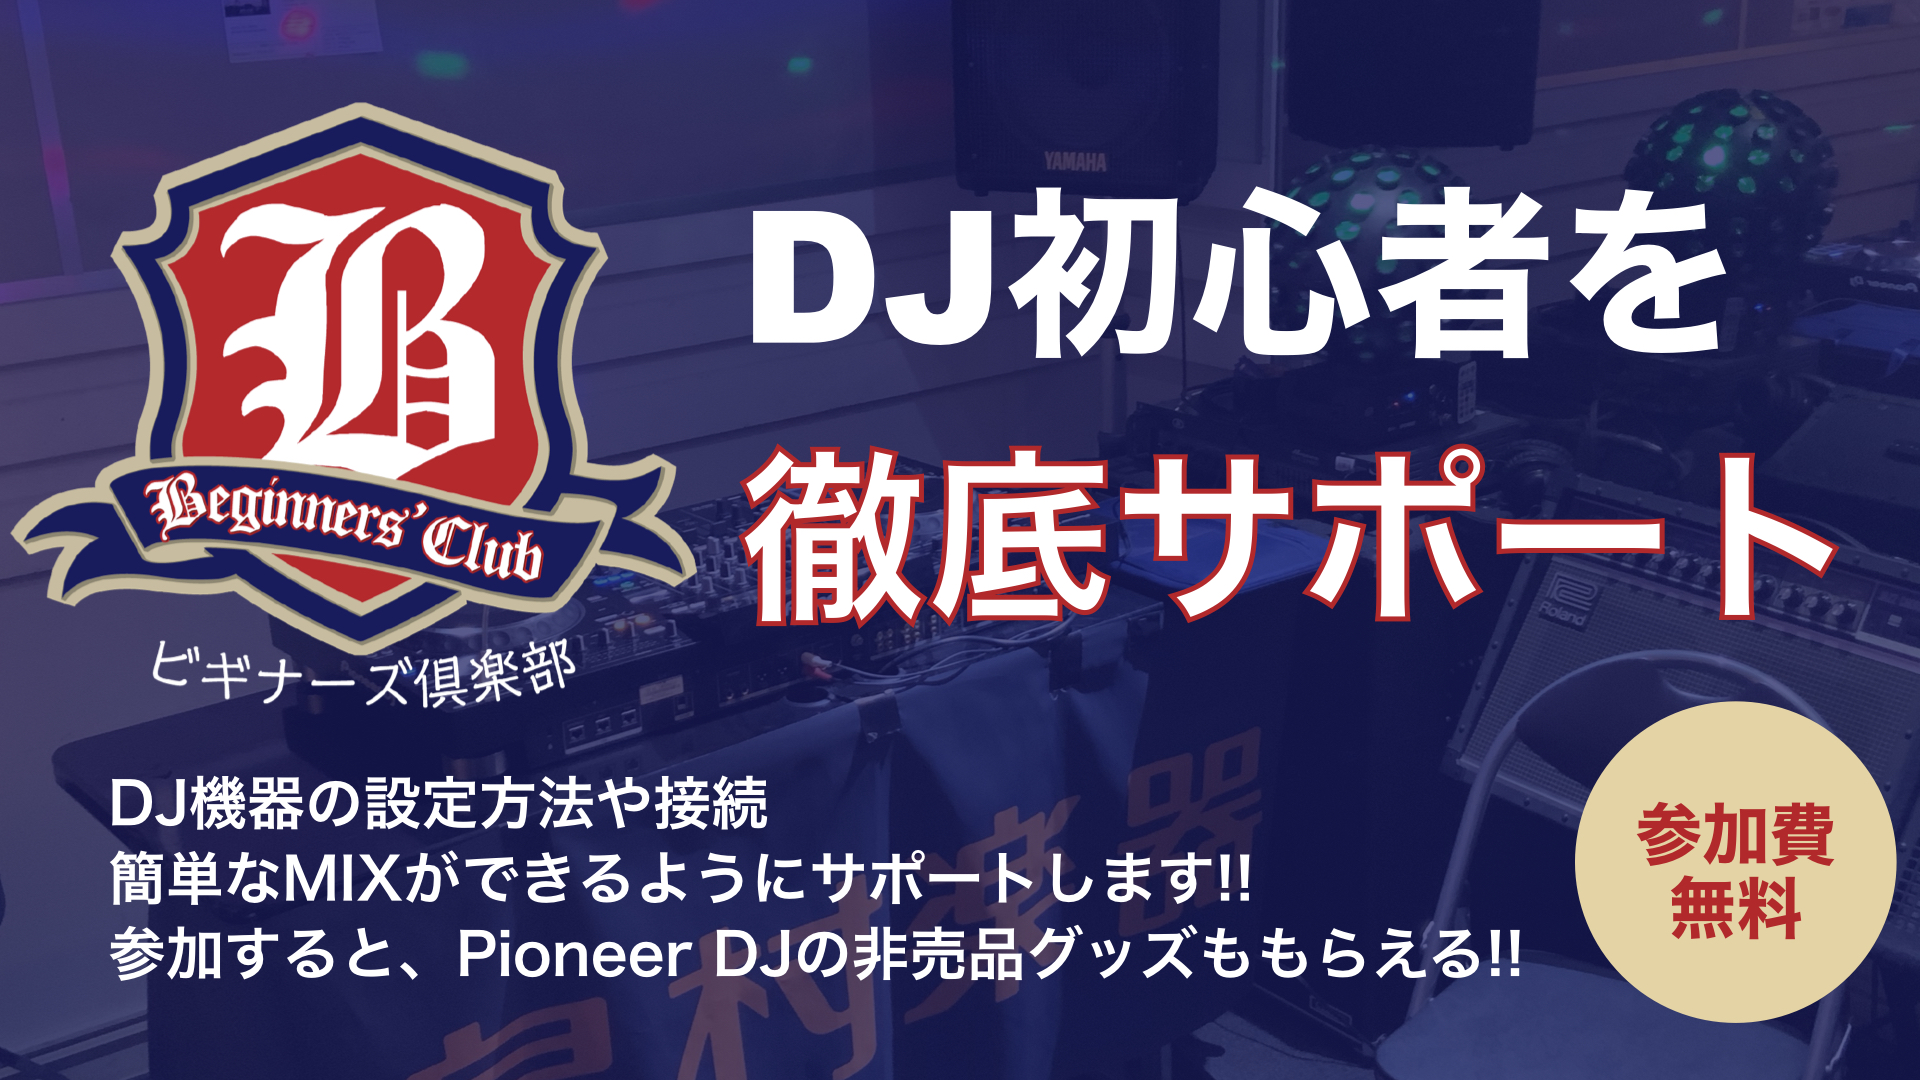 DJ初心者大歓迎！DJが何をやっているのか？DJを楽しむためのサポートはお任せ下さい！ DJビギナーズ倶楽部セミナーでは、これからDJを始める方にピッタリの様々な内容のセミナーを無料で実施しています。広島パルコ店近辺の方是非ご来店下さいませ。 DJを始めるからには続けてもらいたいので、島村楽器がでは […]